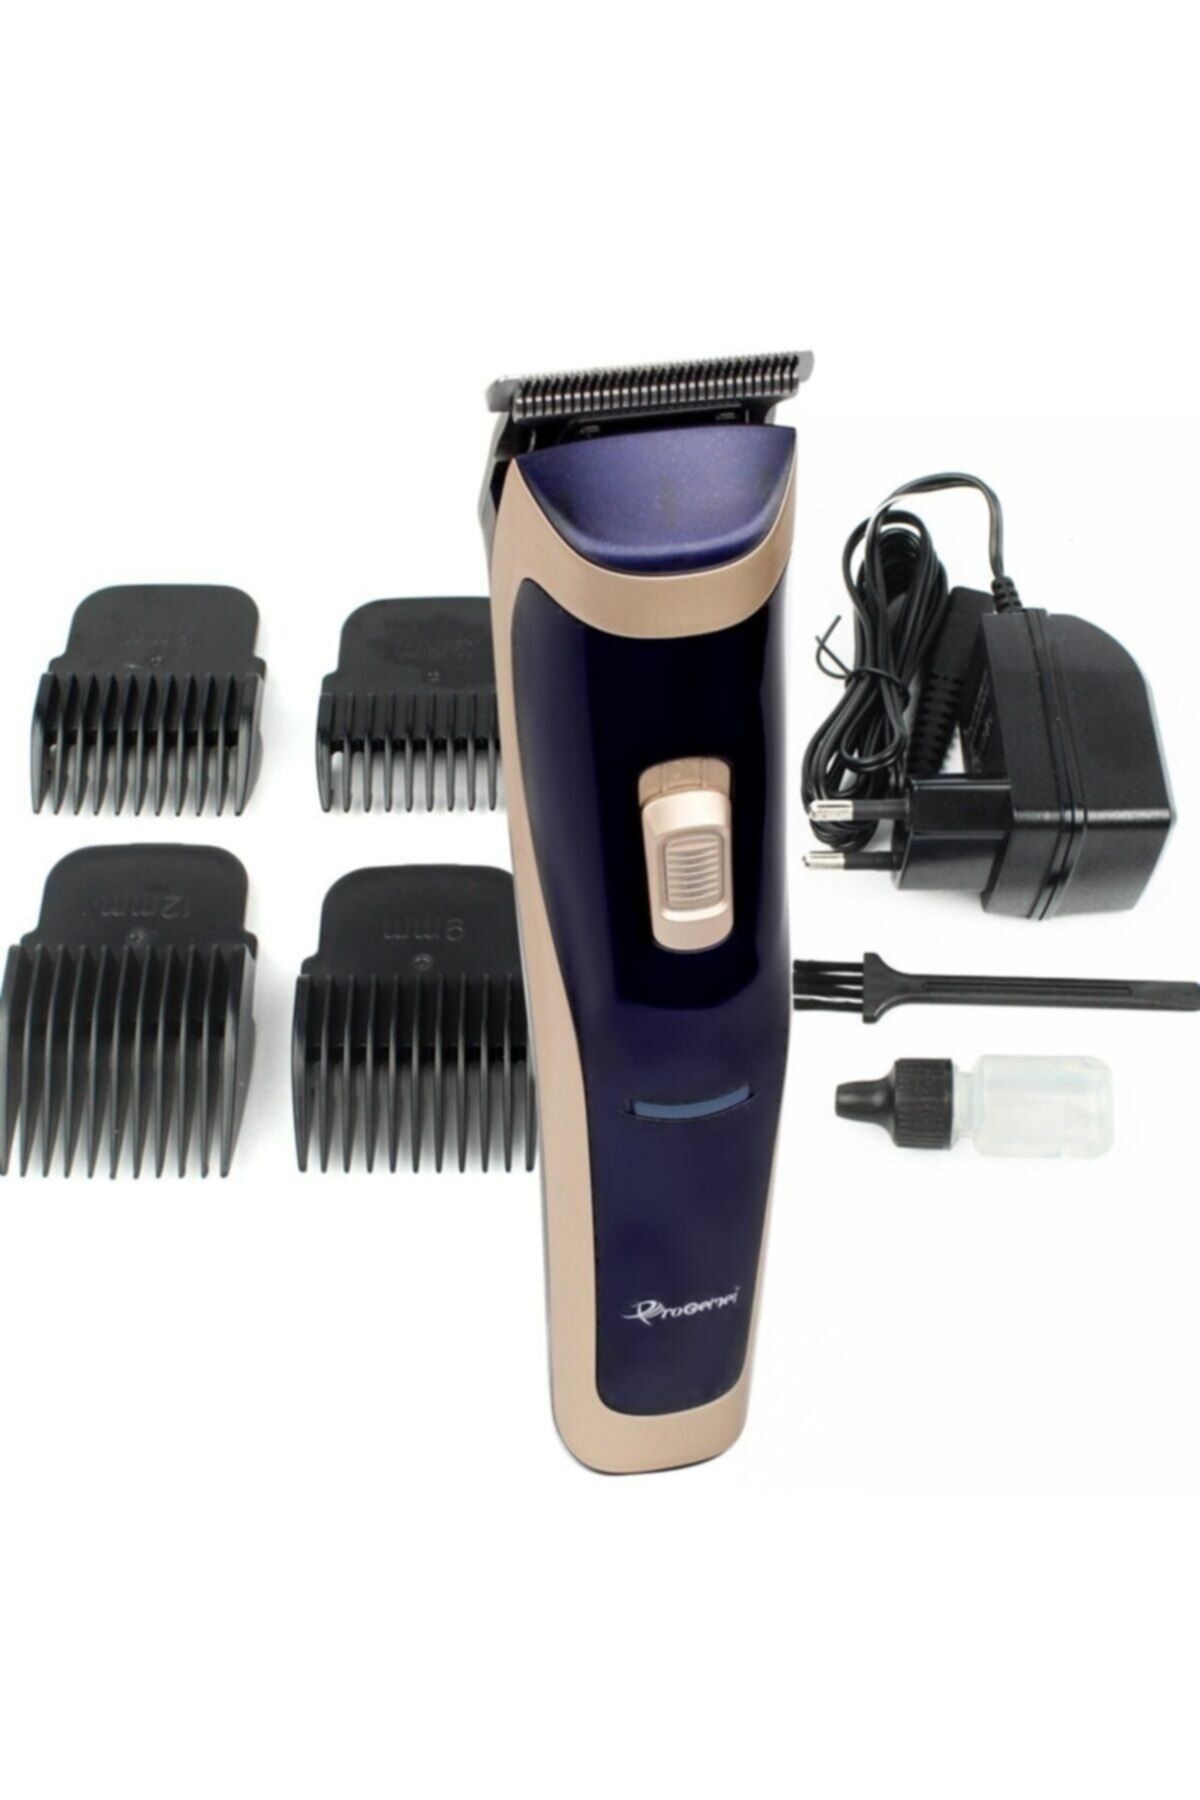 Geemy Gm-6005 Şarjlı Saç Sakal Ense Tıraş Makinesi Yeni Model Orjinal Ürün